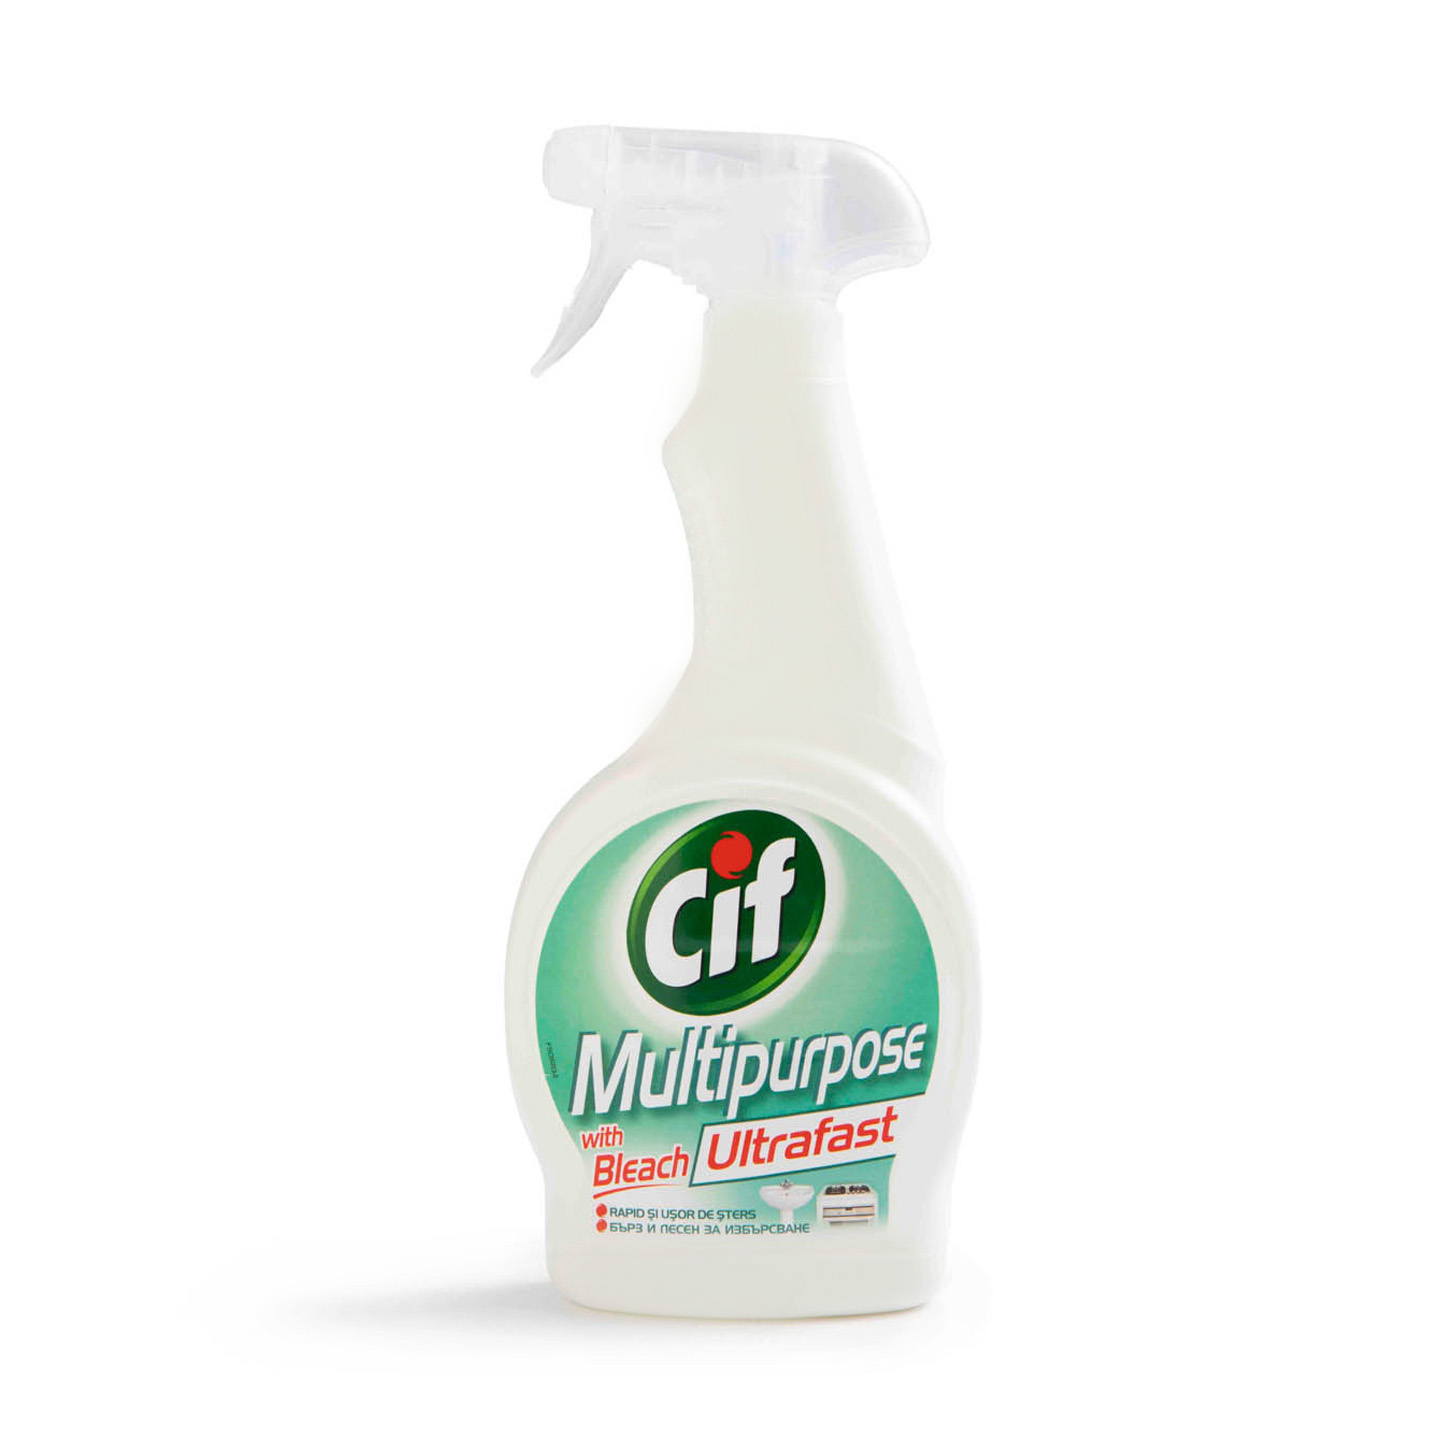 Detergent spray Cif 500ml